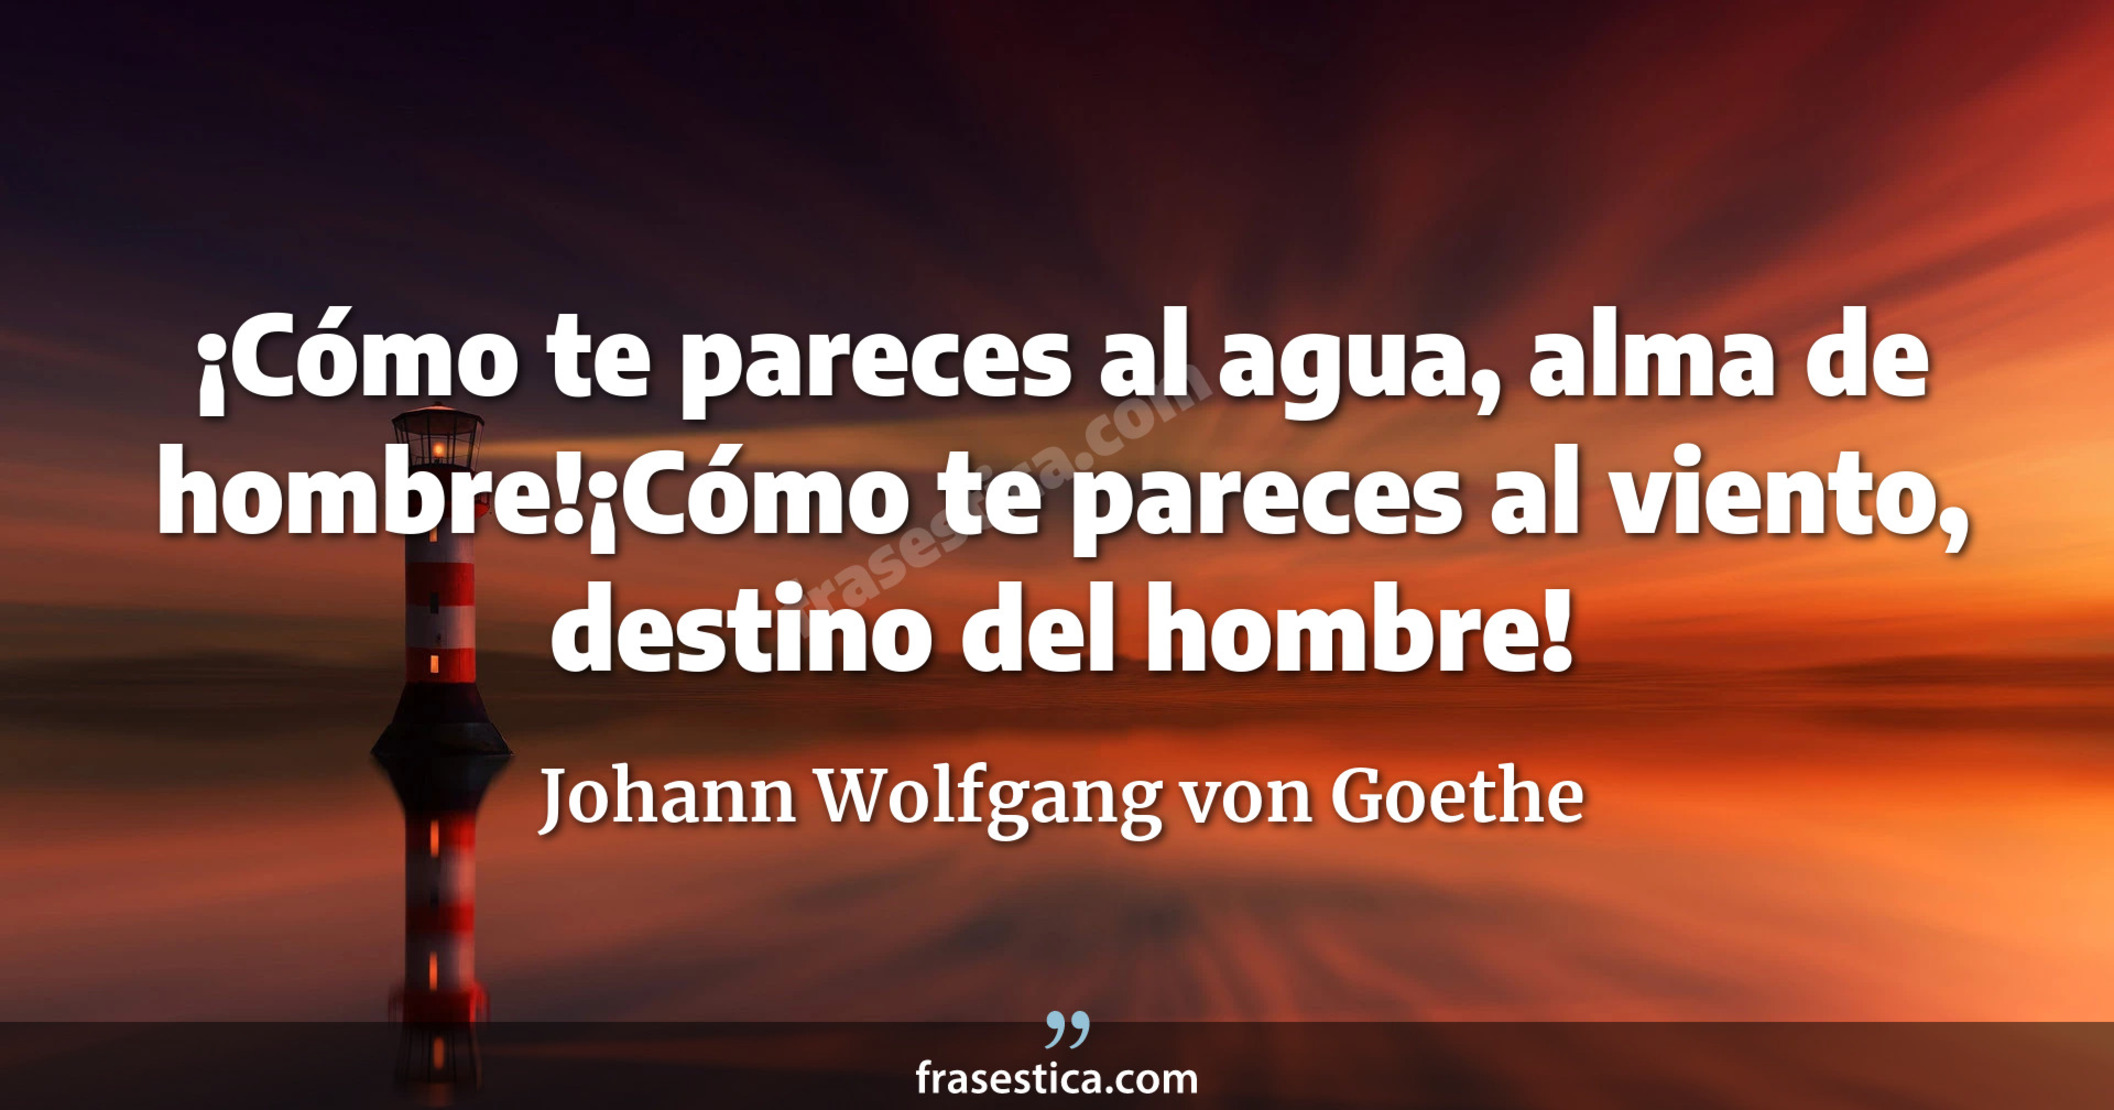 ¡Cómo te pareces al agua, alma de hombre!¡Cómo te pareces al viento, destino del hombre! - Johann Wolfgang von Goethe